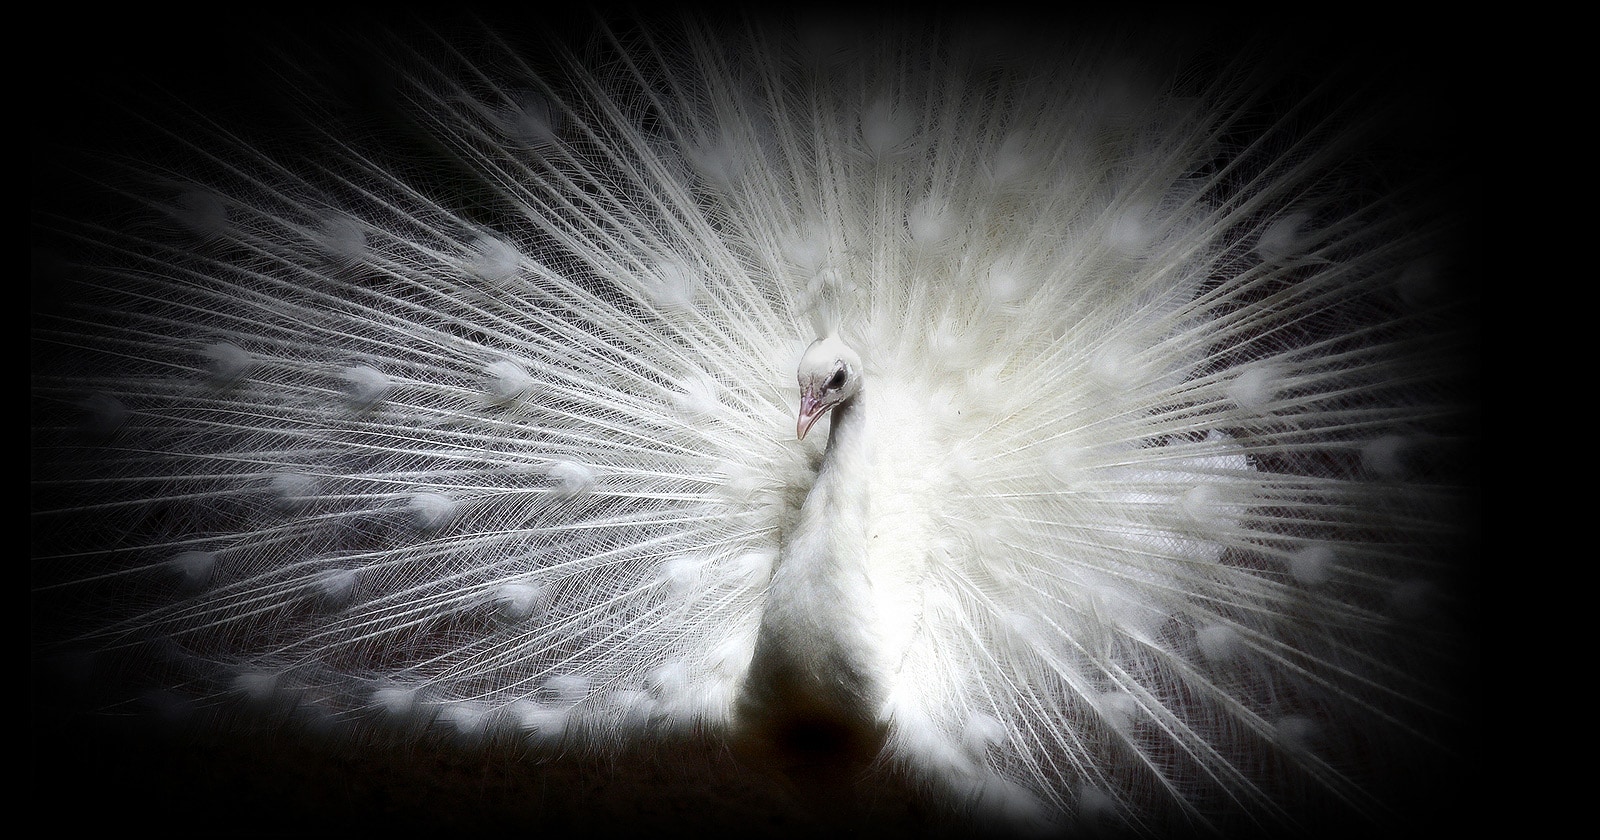 Hình ảnh của một con công trắng trên nền đen trên màn hình OLED EVO cho thấy rõ các chi tiết phức tạp của mỗi chiếc lông vũ